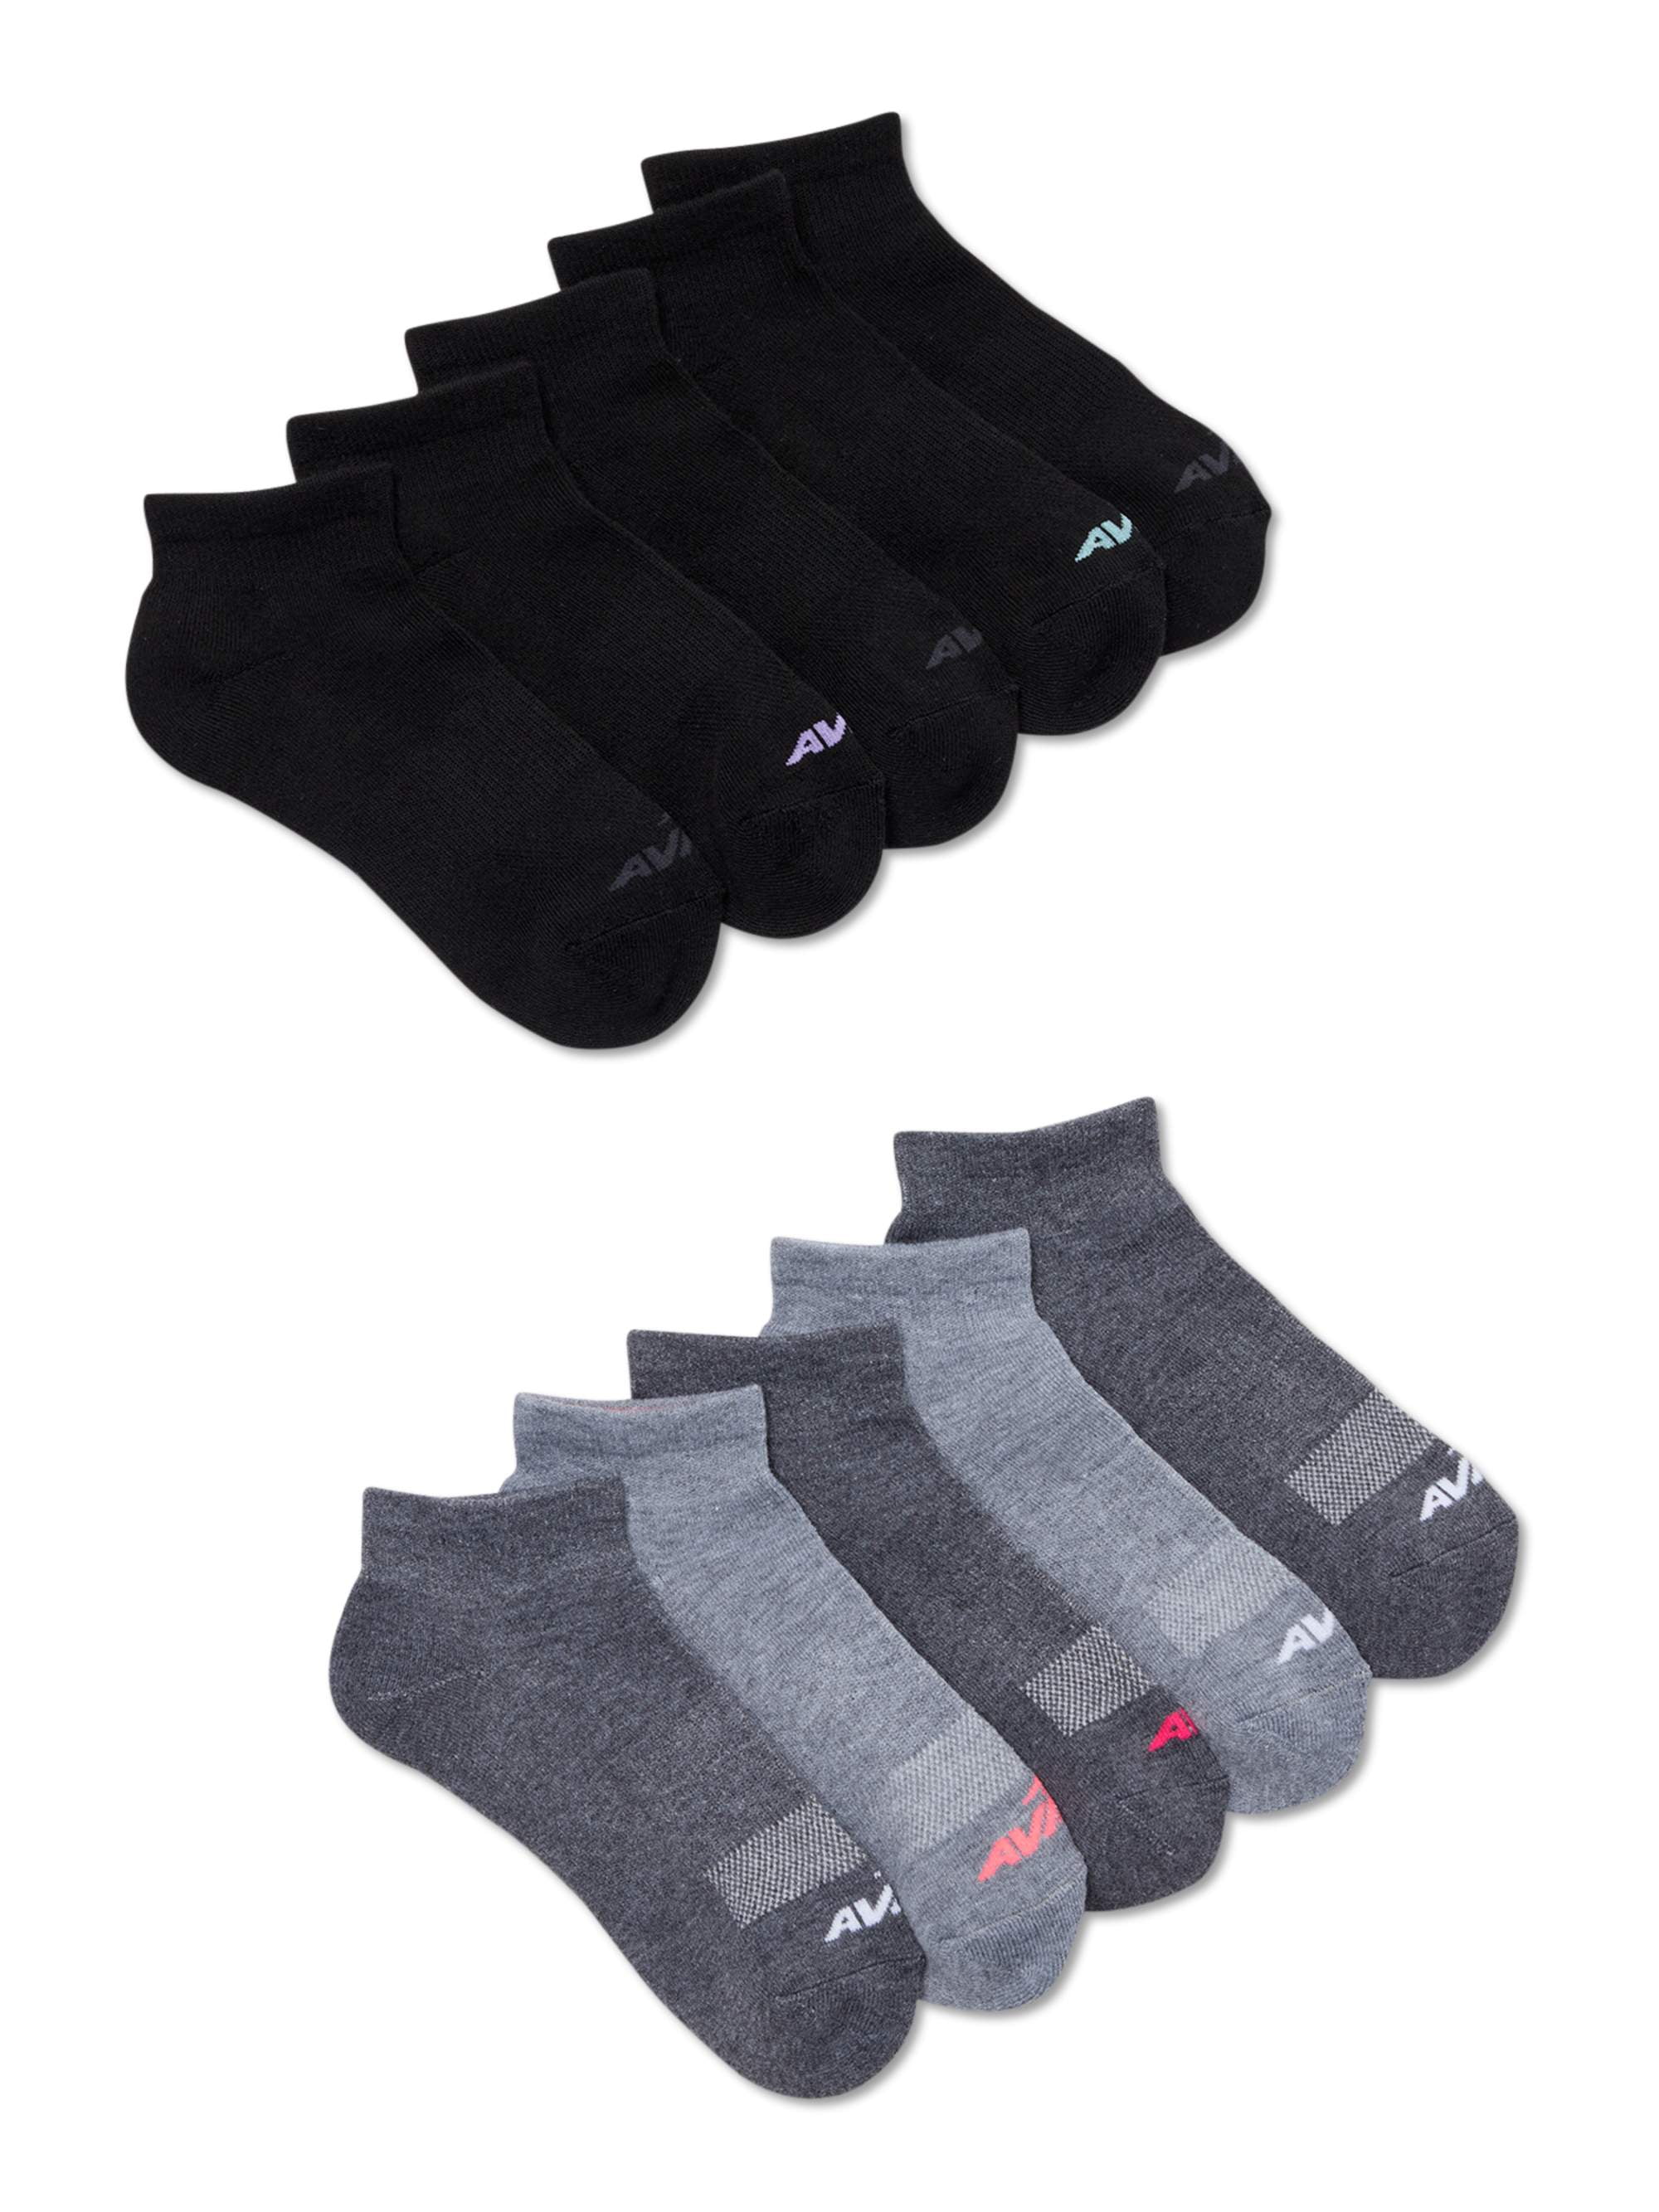 Avia Women's Performance Ankle Socks,10-Pack 